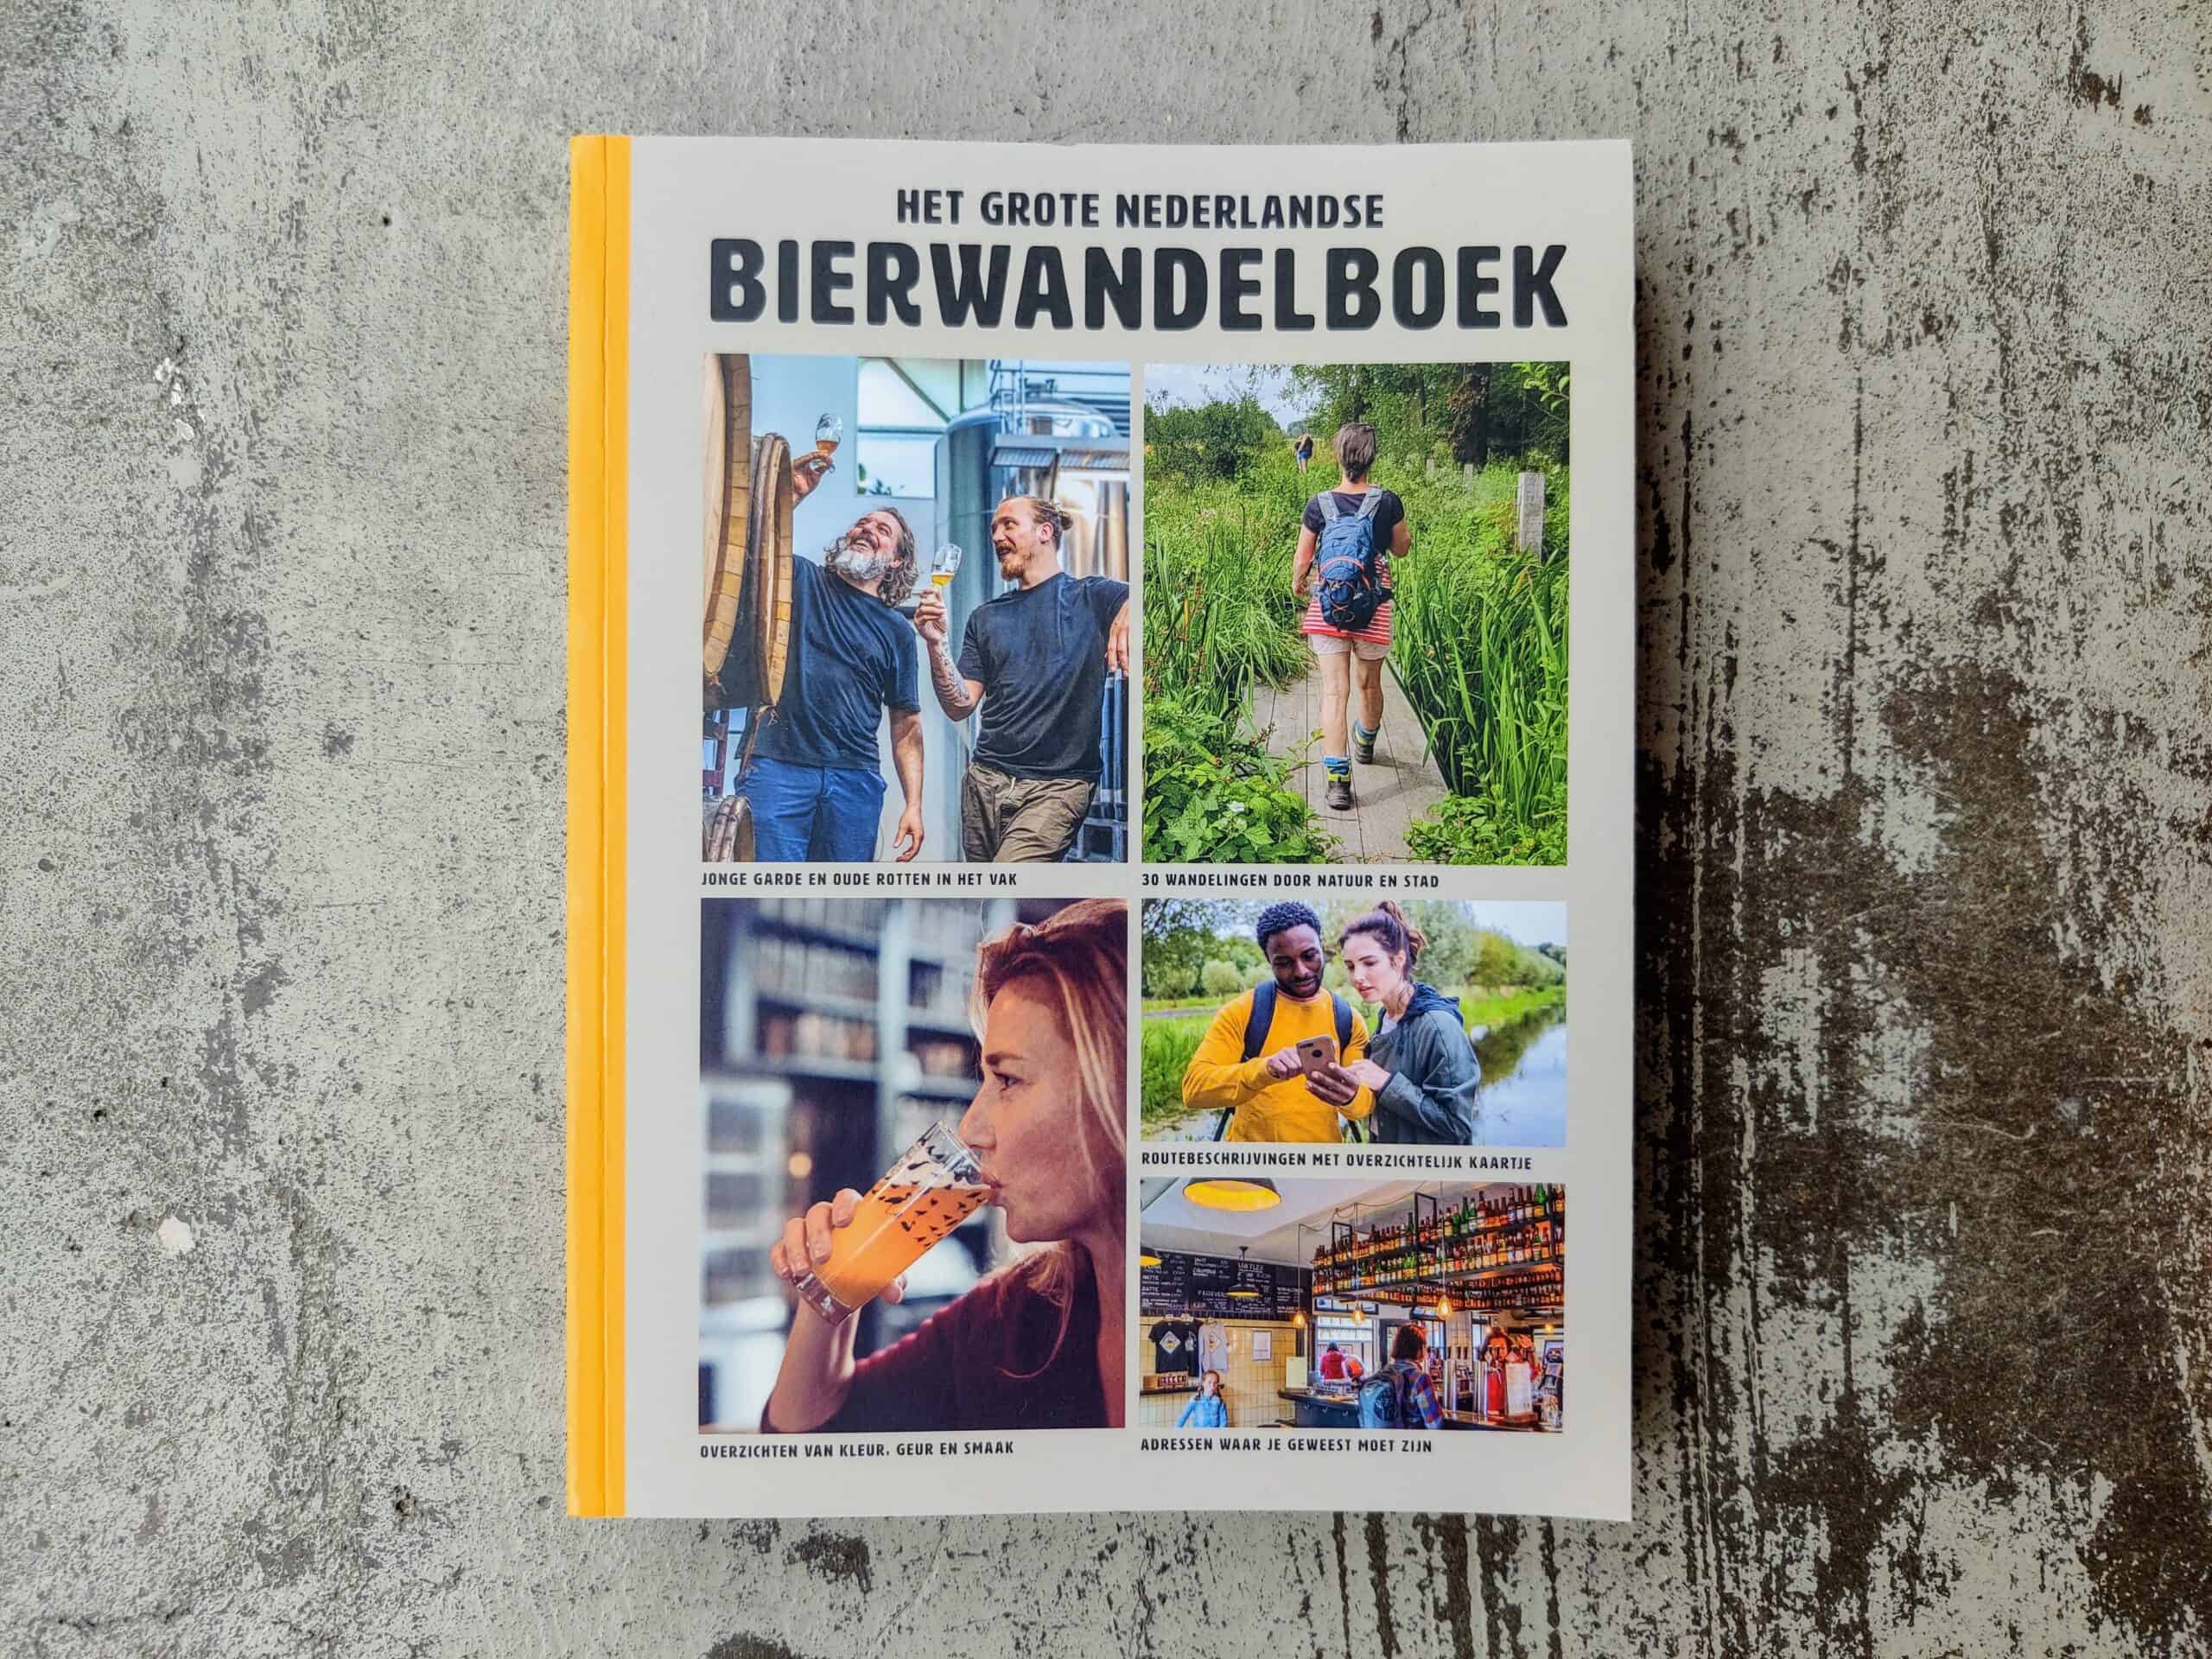 Het grote nederlandse bierwandelboek